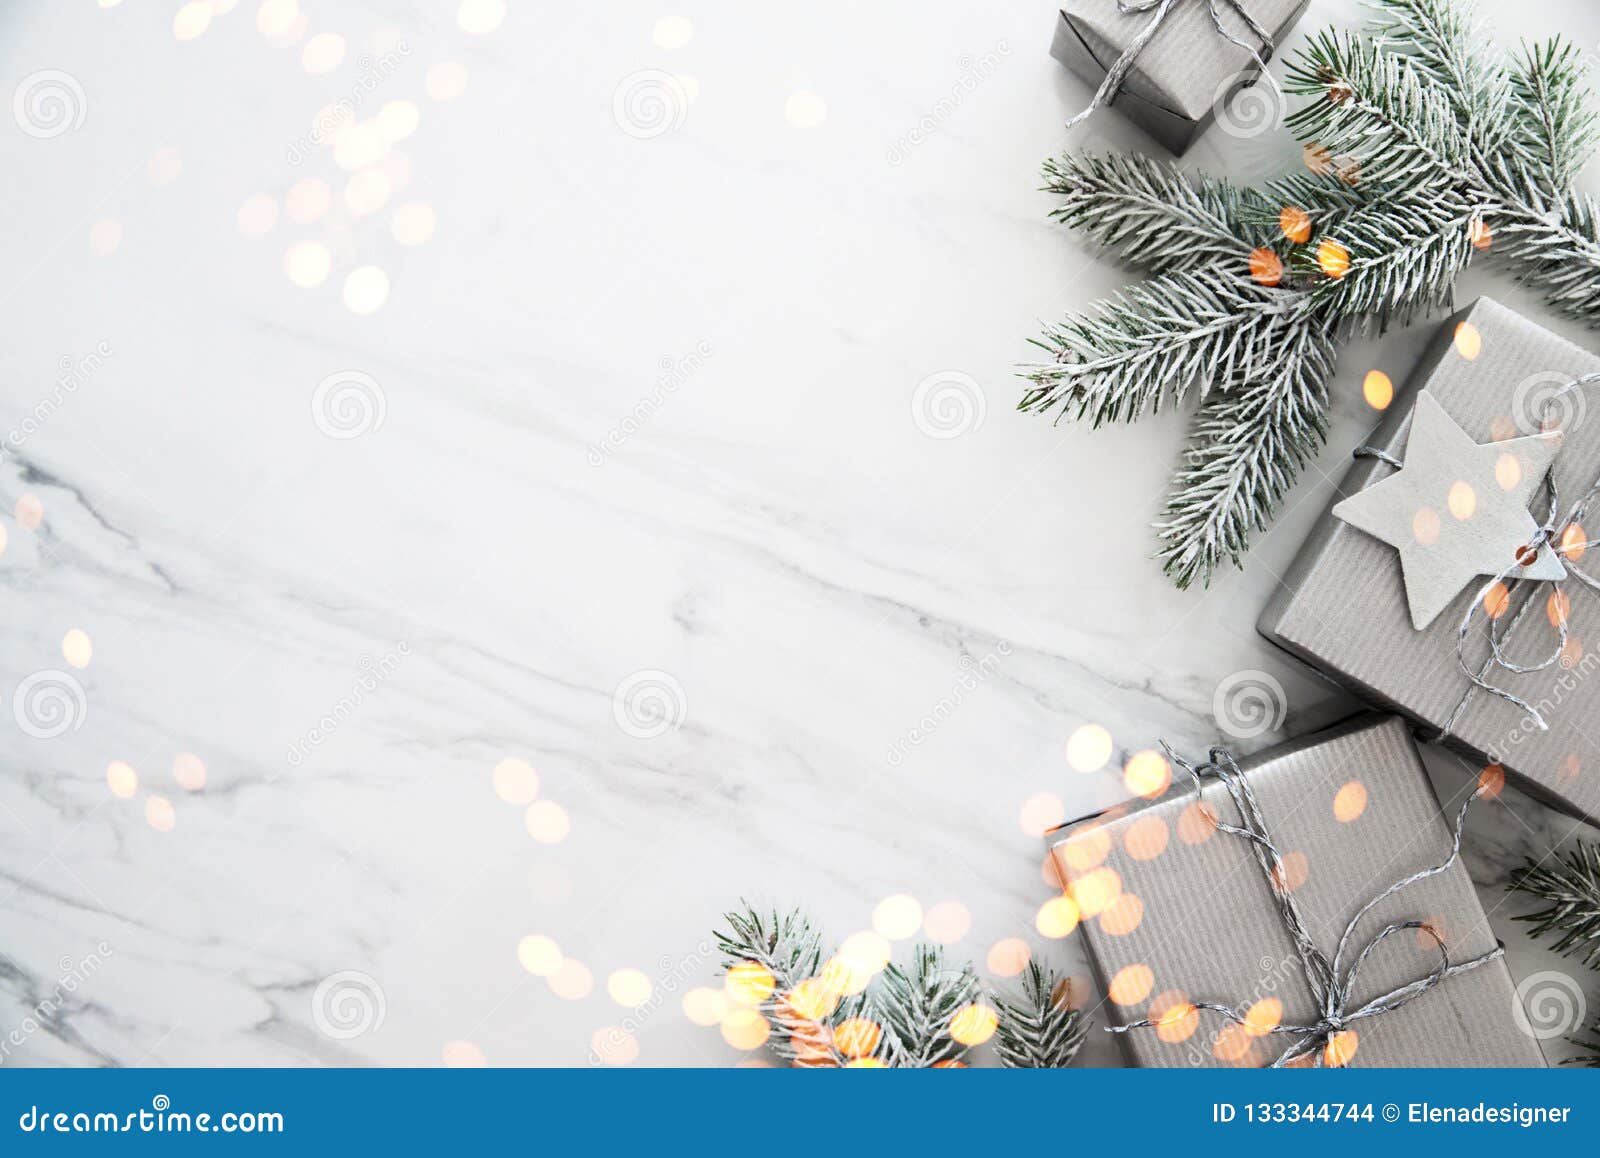 Fundo Do Feriado Do Natal E Do Ano Novo Cartão Do Xmas Feriados De Inverno  Foto de Stock - Imagem de caixa, especial: 133344744